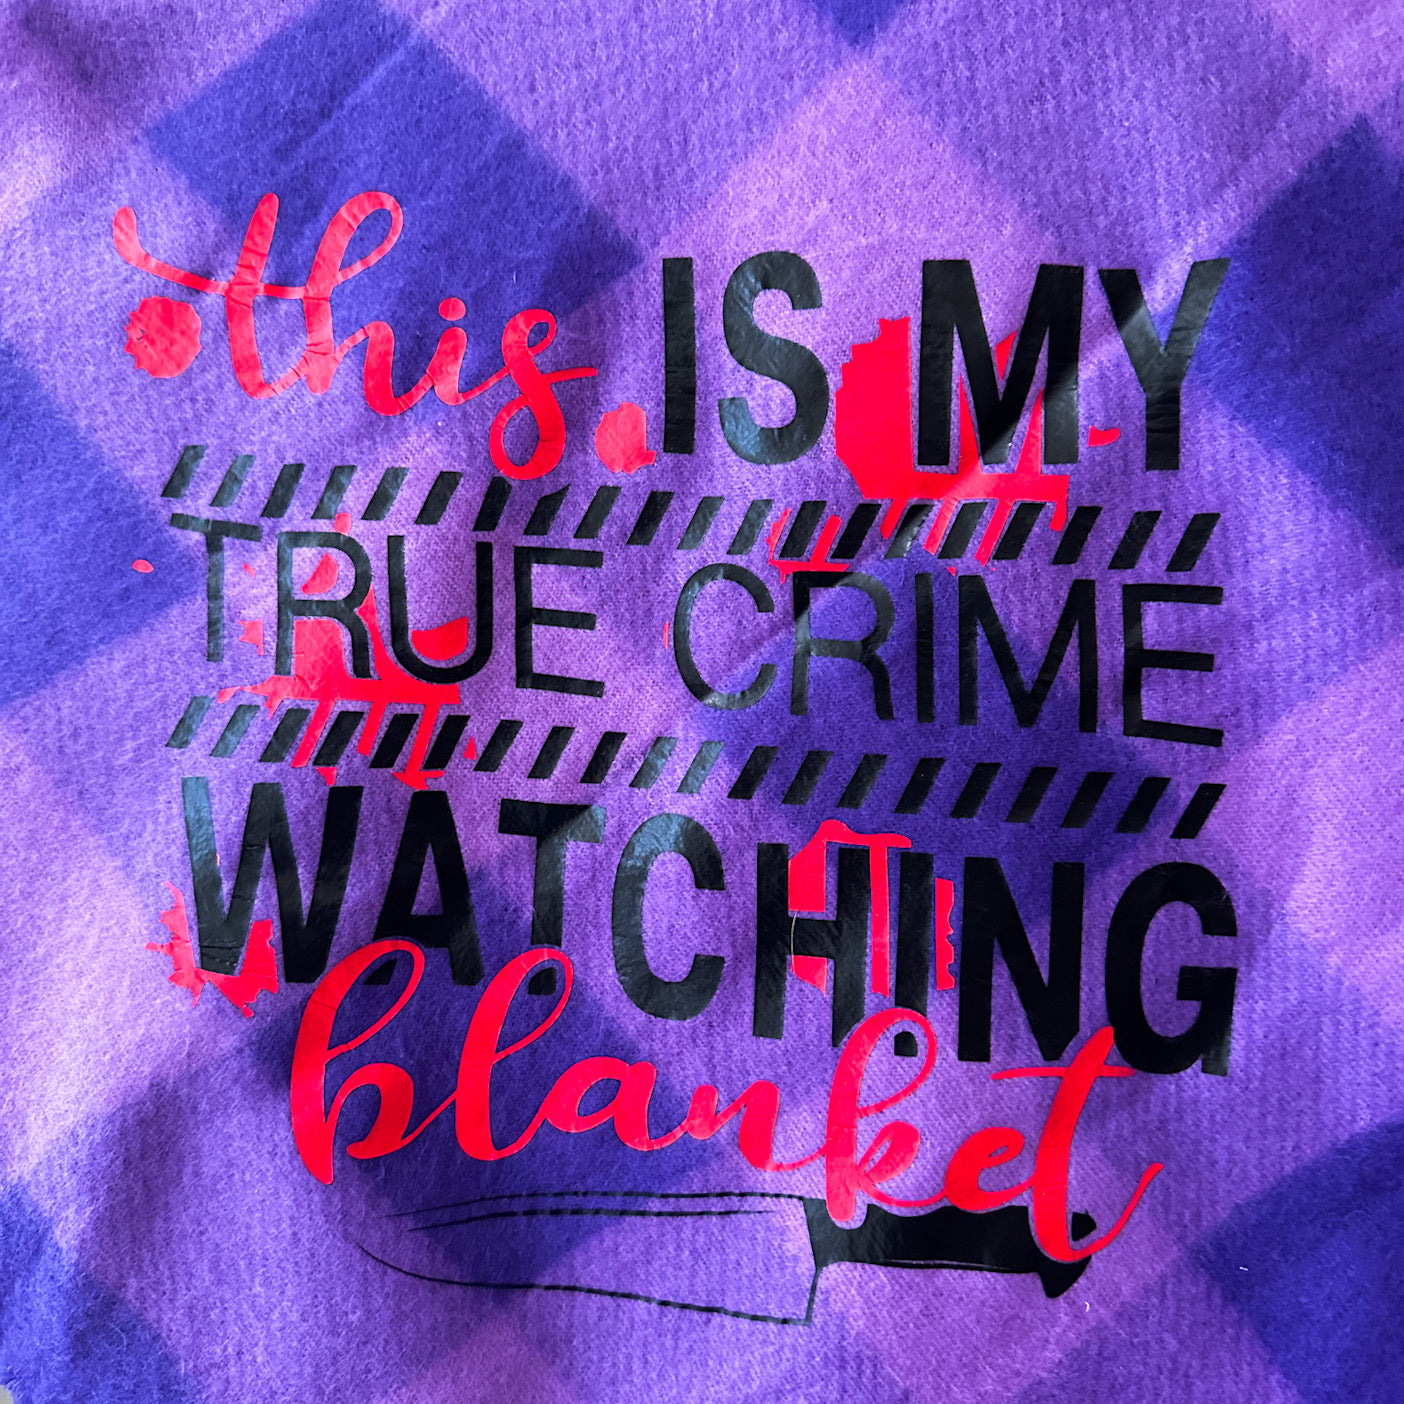 True Crime Blanket